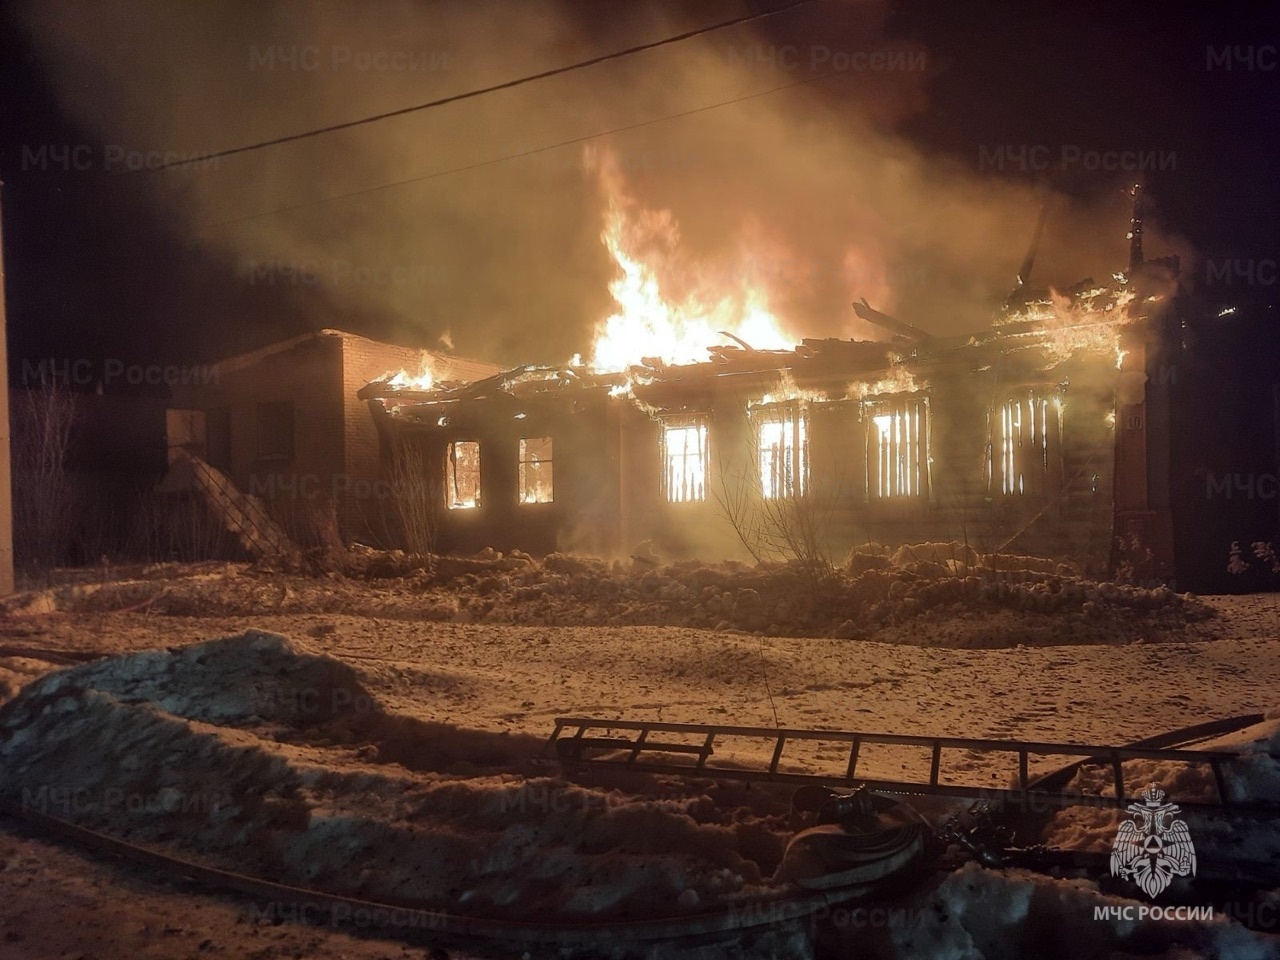 Пожар уничтожил большой частный дом в Гороховецком районе 